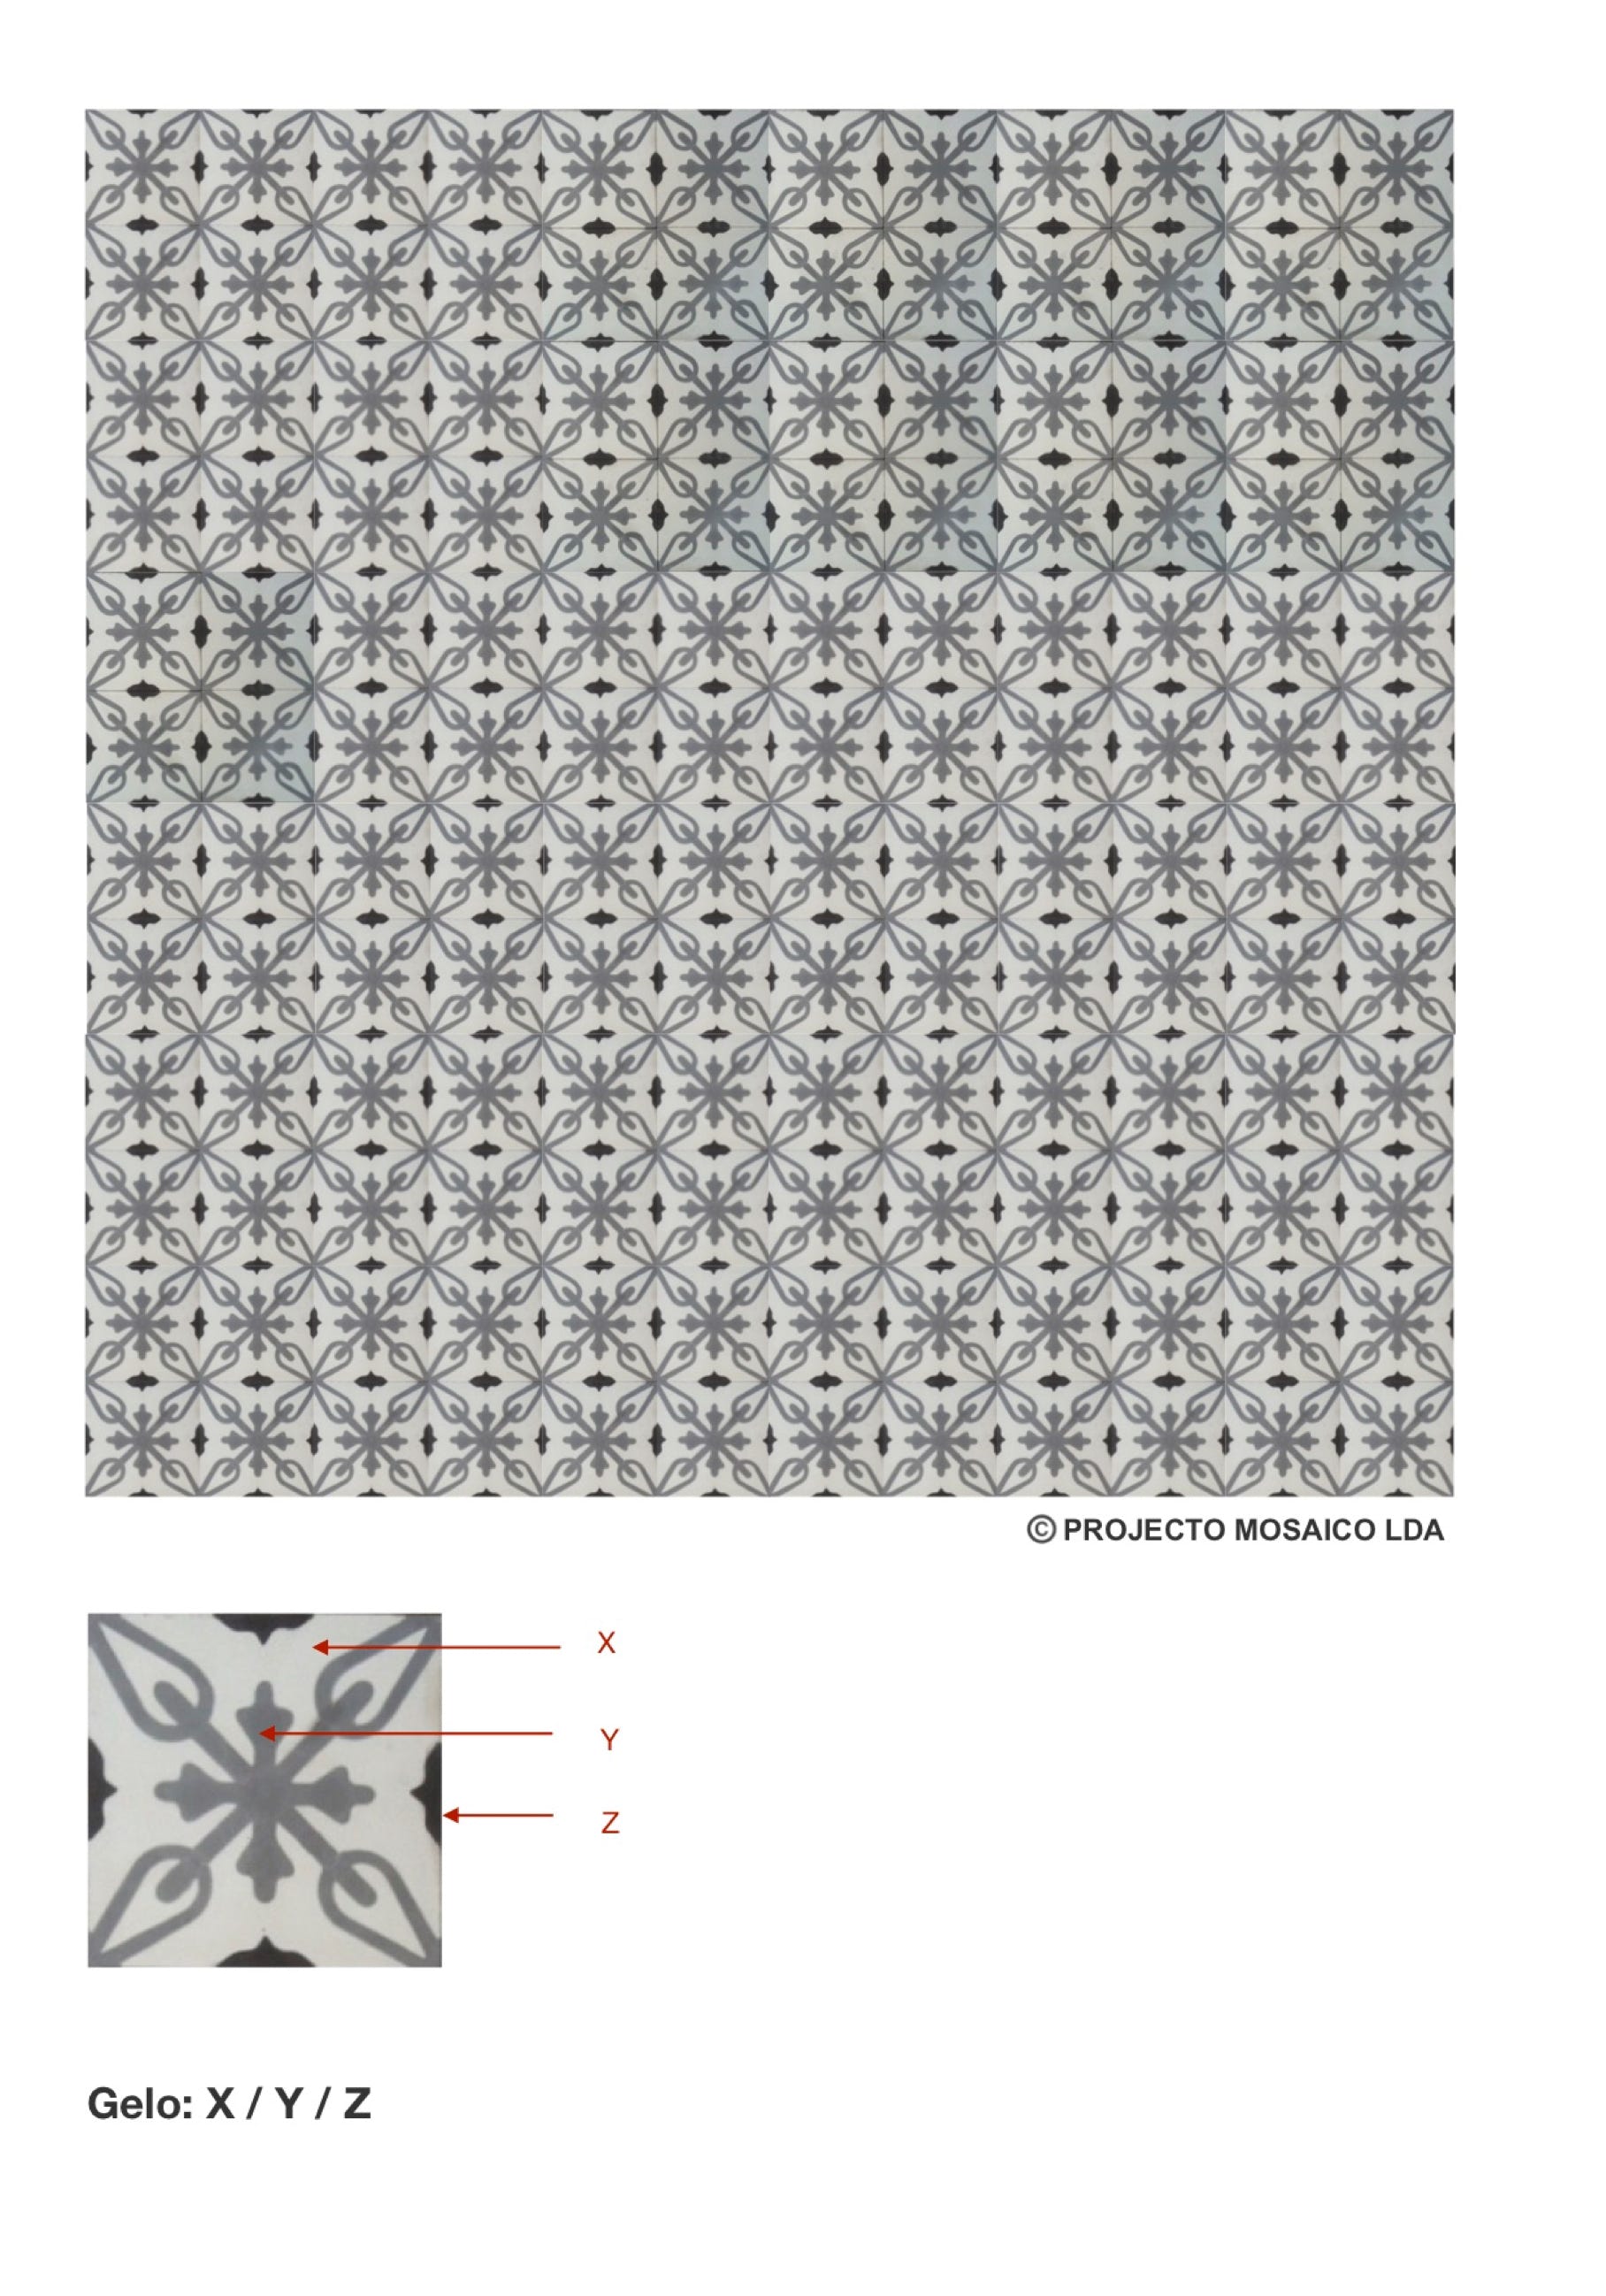 illustração de aplicação do mosaico hidráulico ref: Gelo